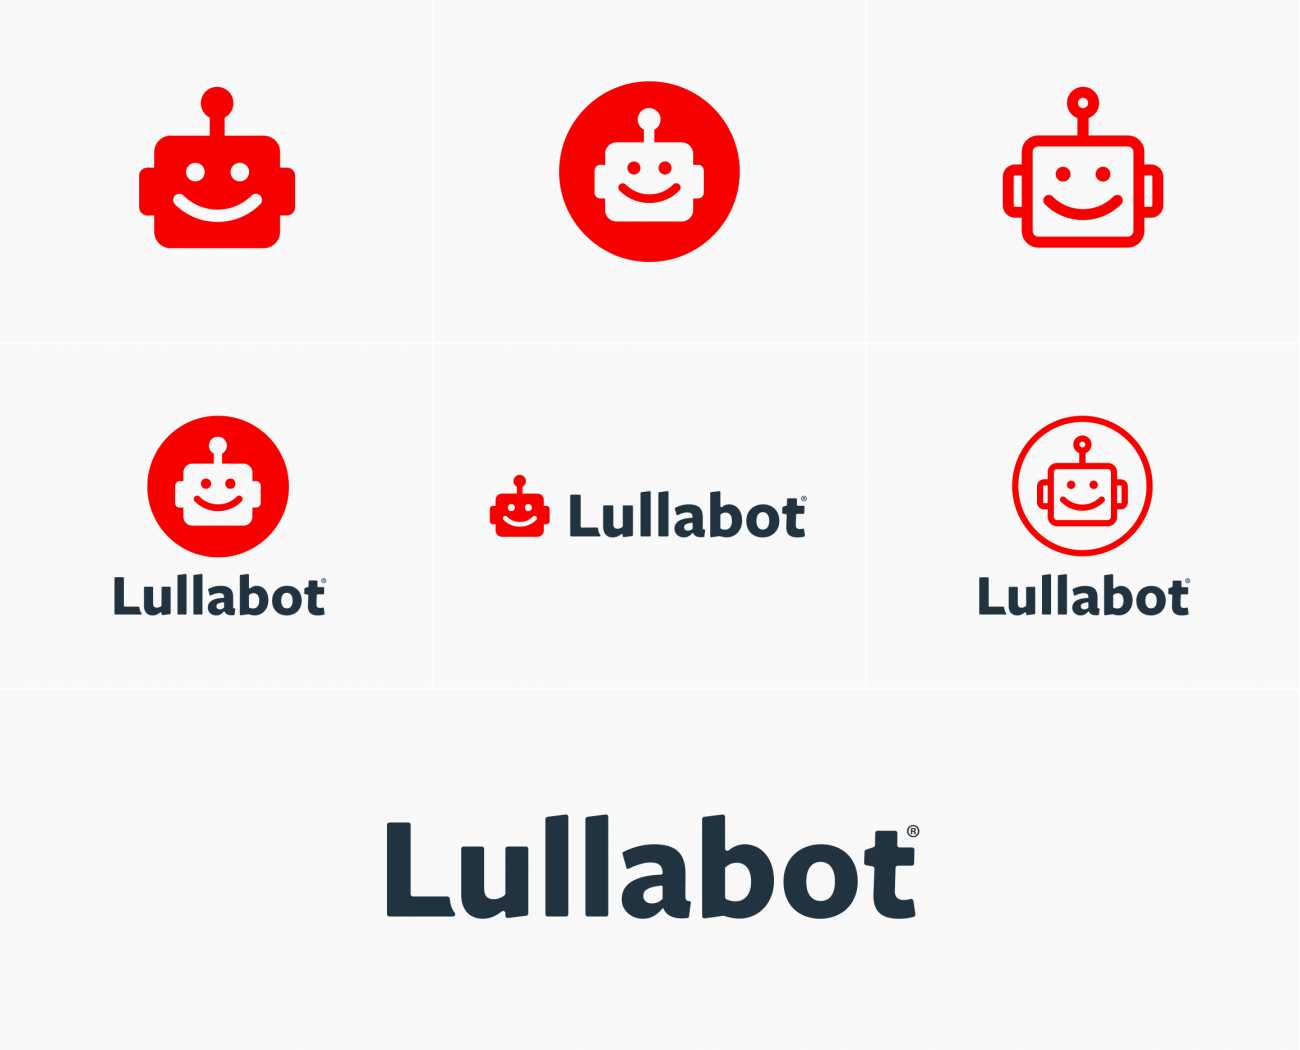 The Lullabot identity system